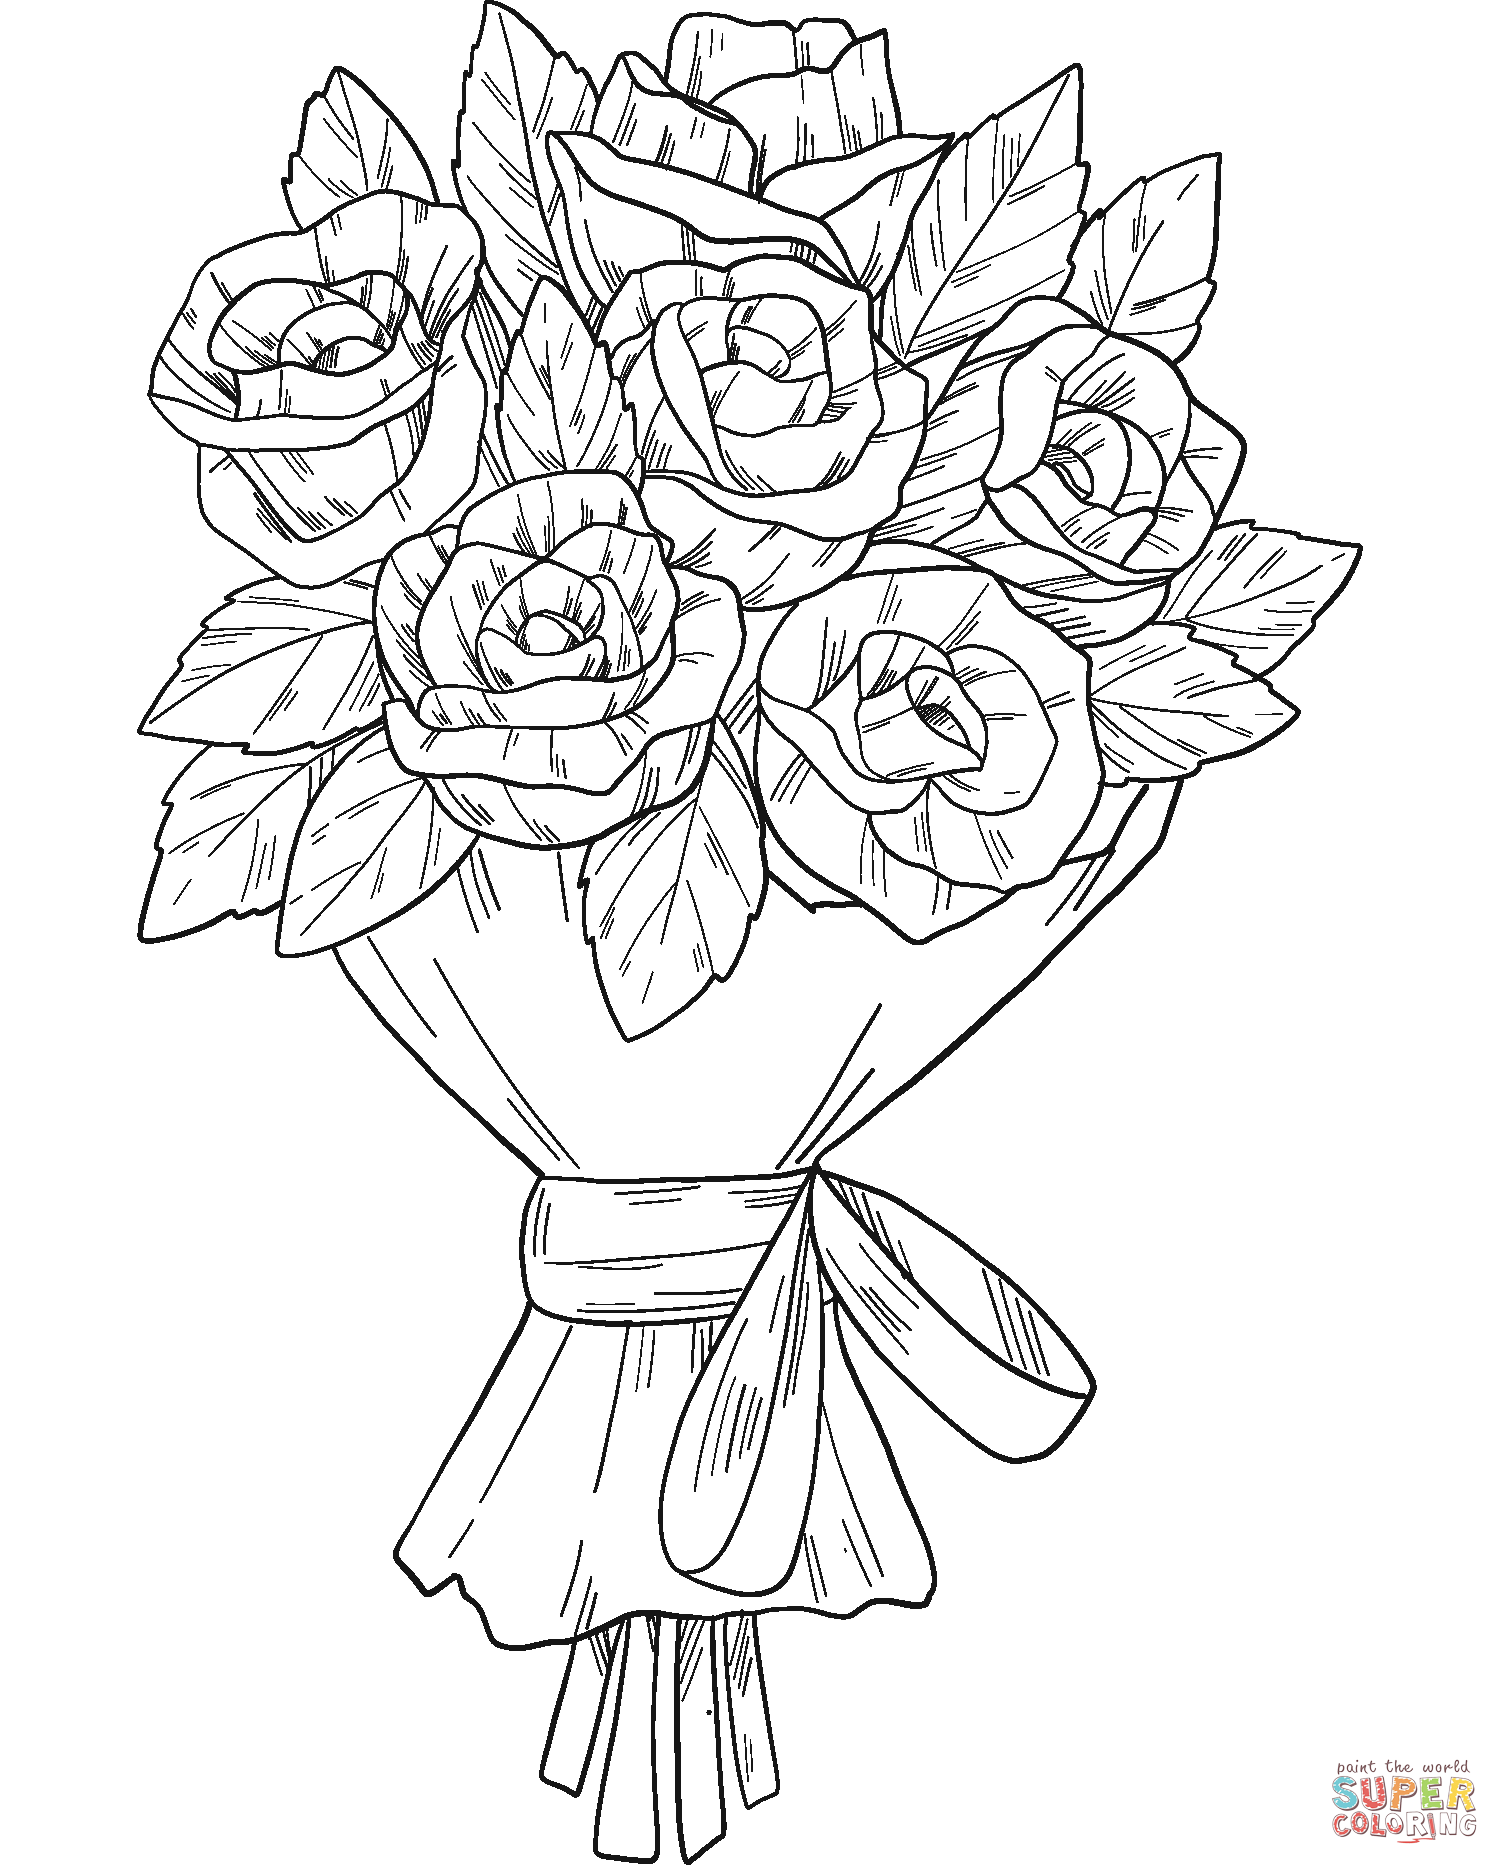 Раскраска букет роз